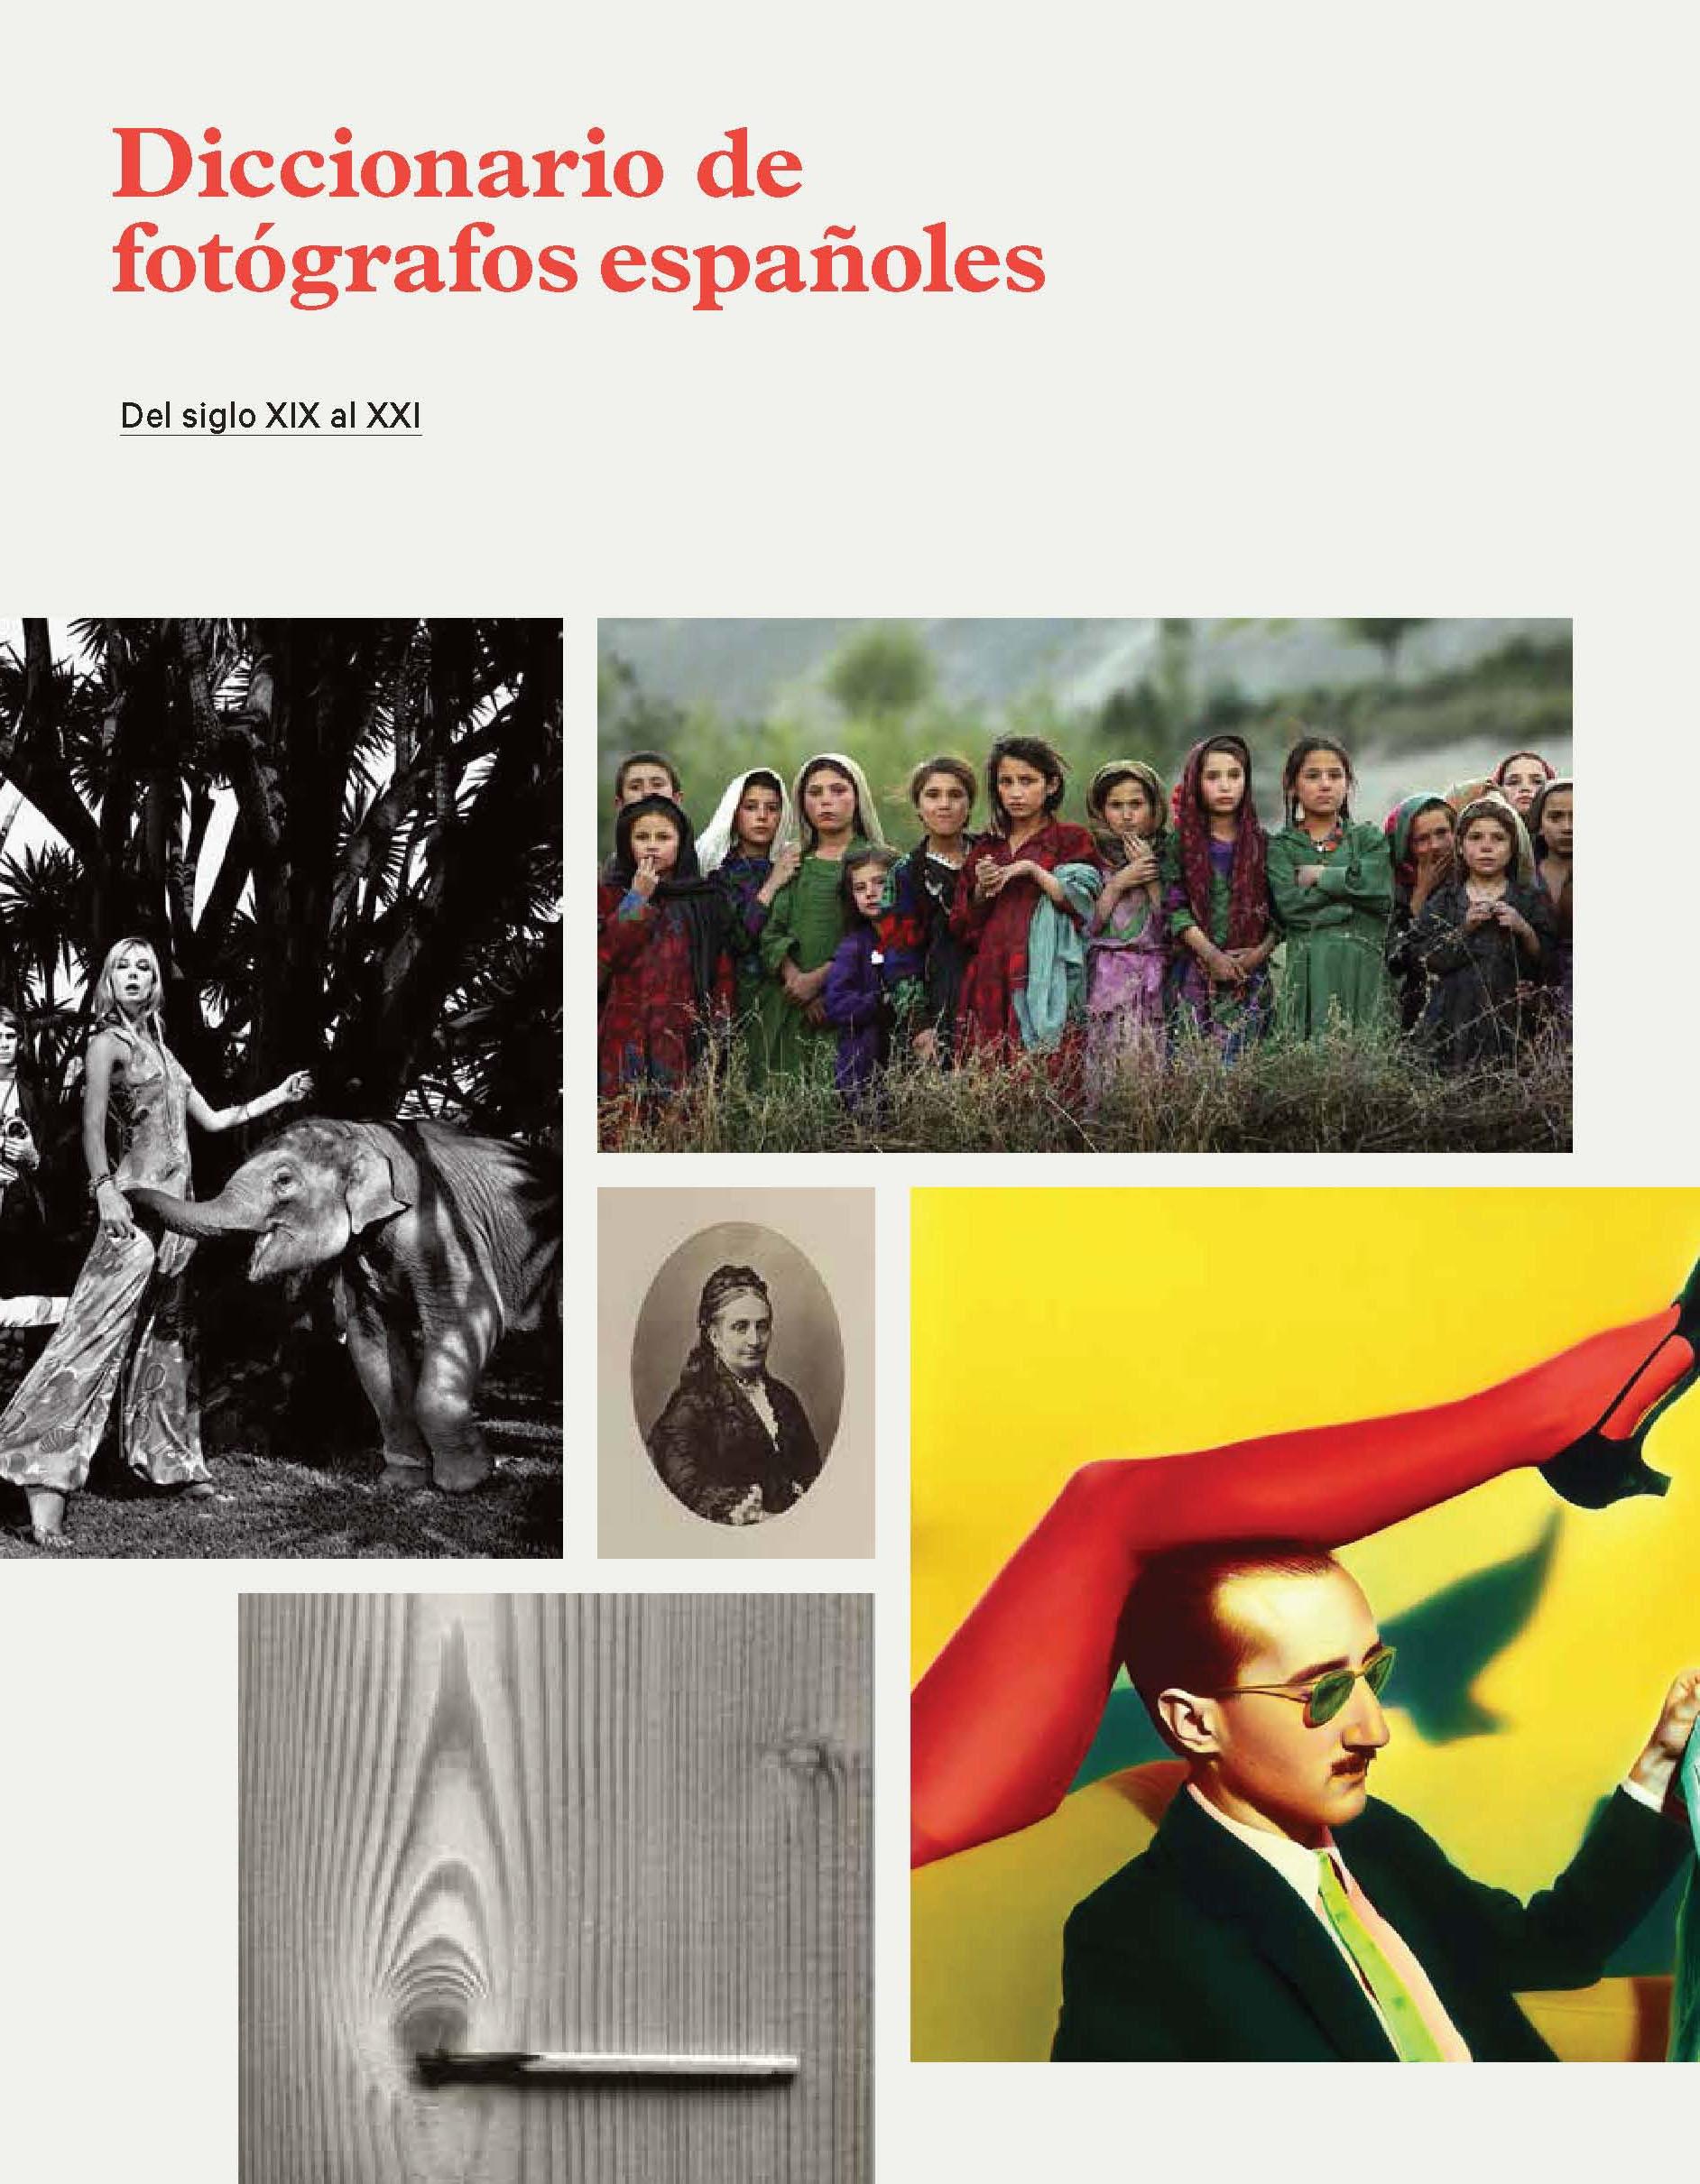 Diccionario de fotógrafos españoles: del siglo XIX al XXI